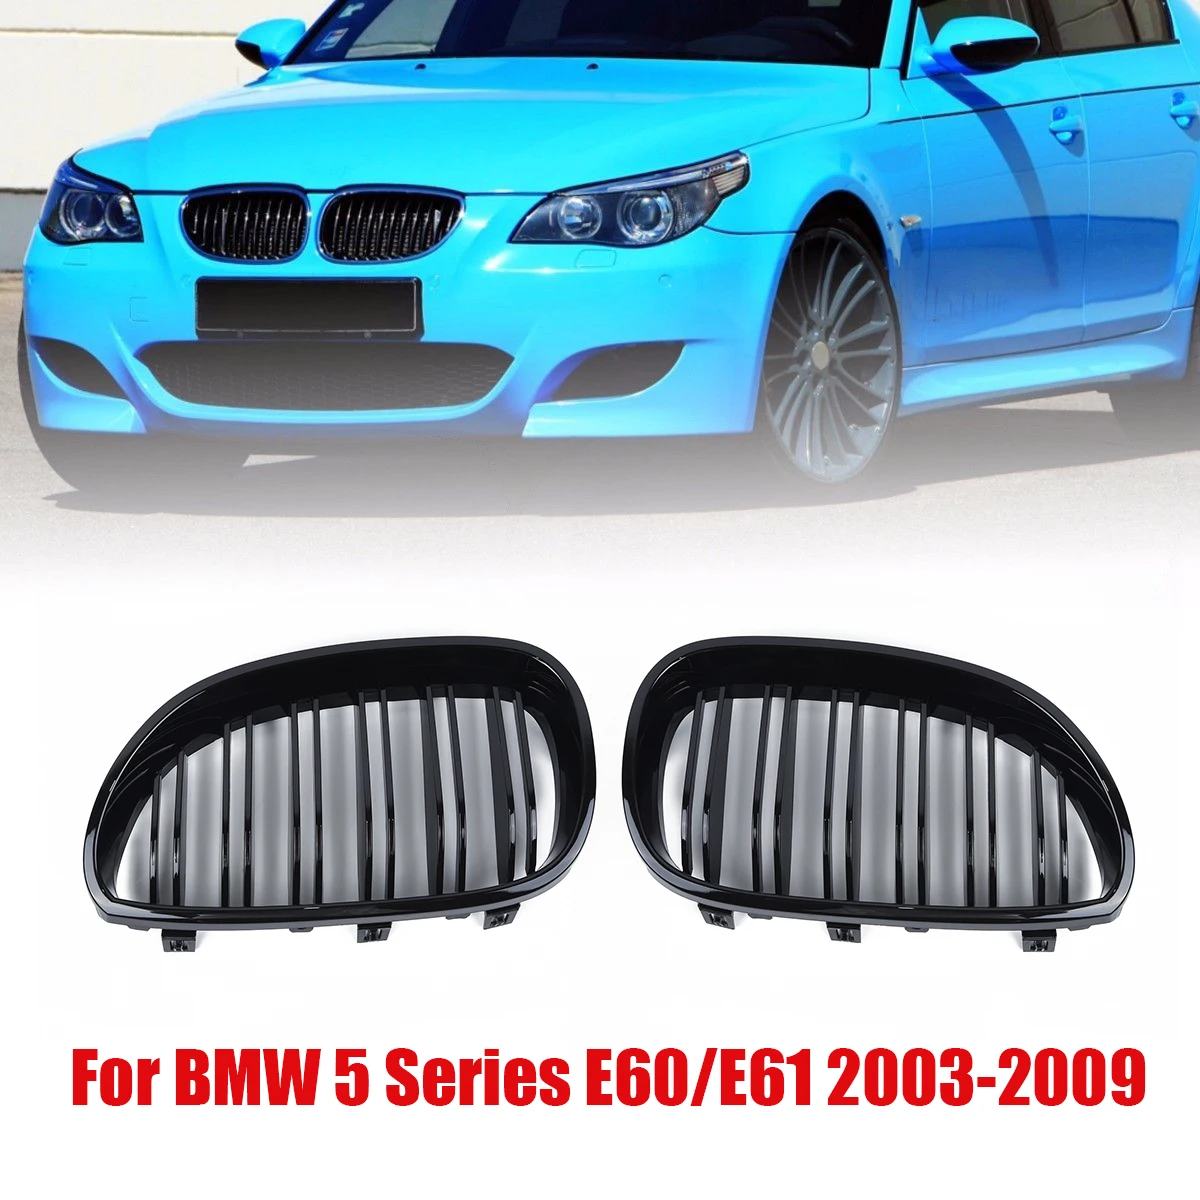 Передняя почечная решетка для BMW двойная линия решетка для BMW E60 E61 5 серия 2003-2010